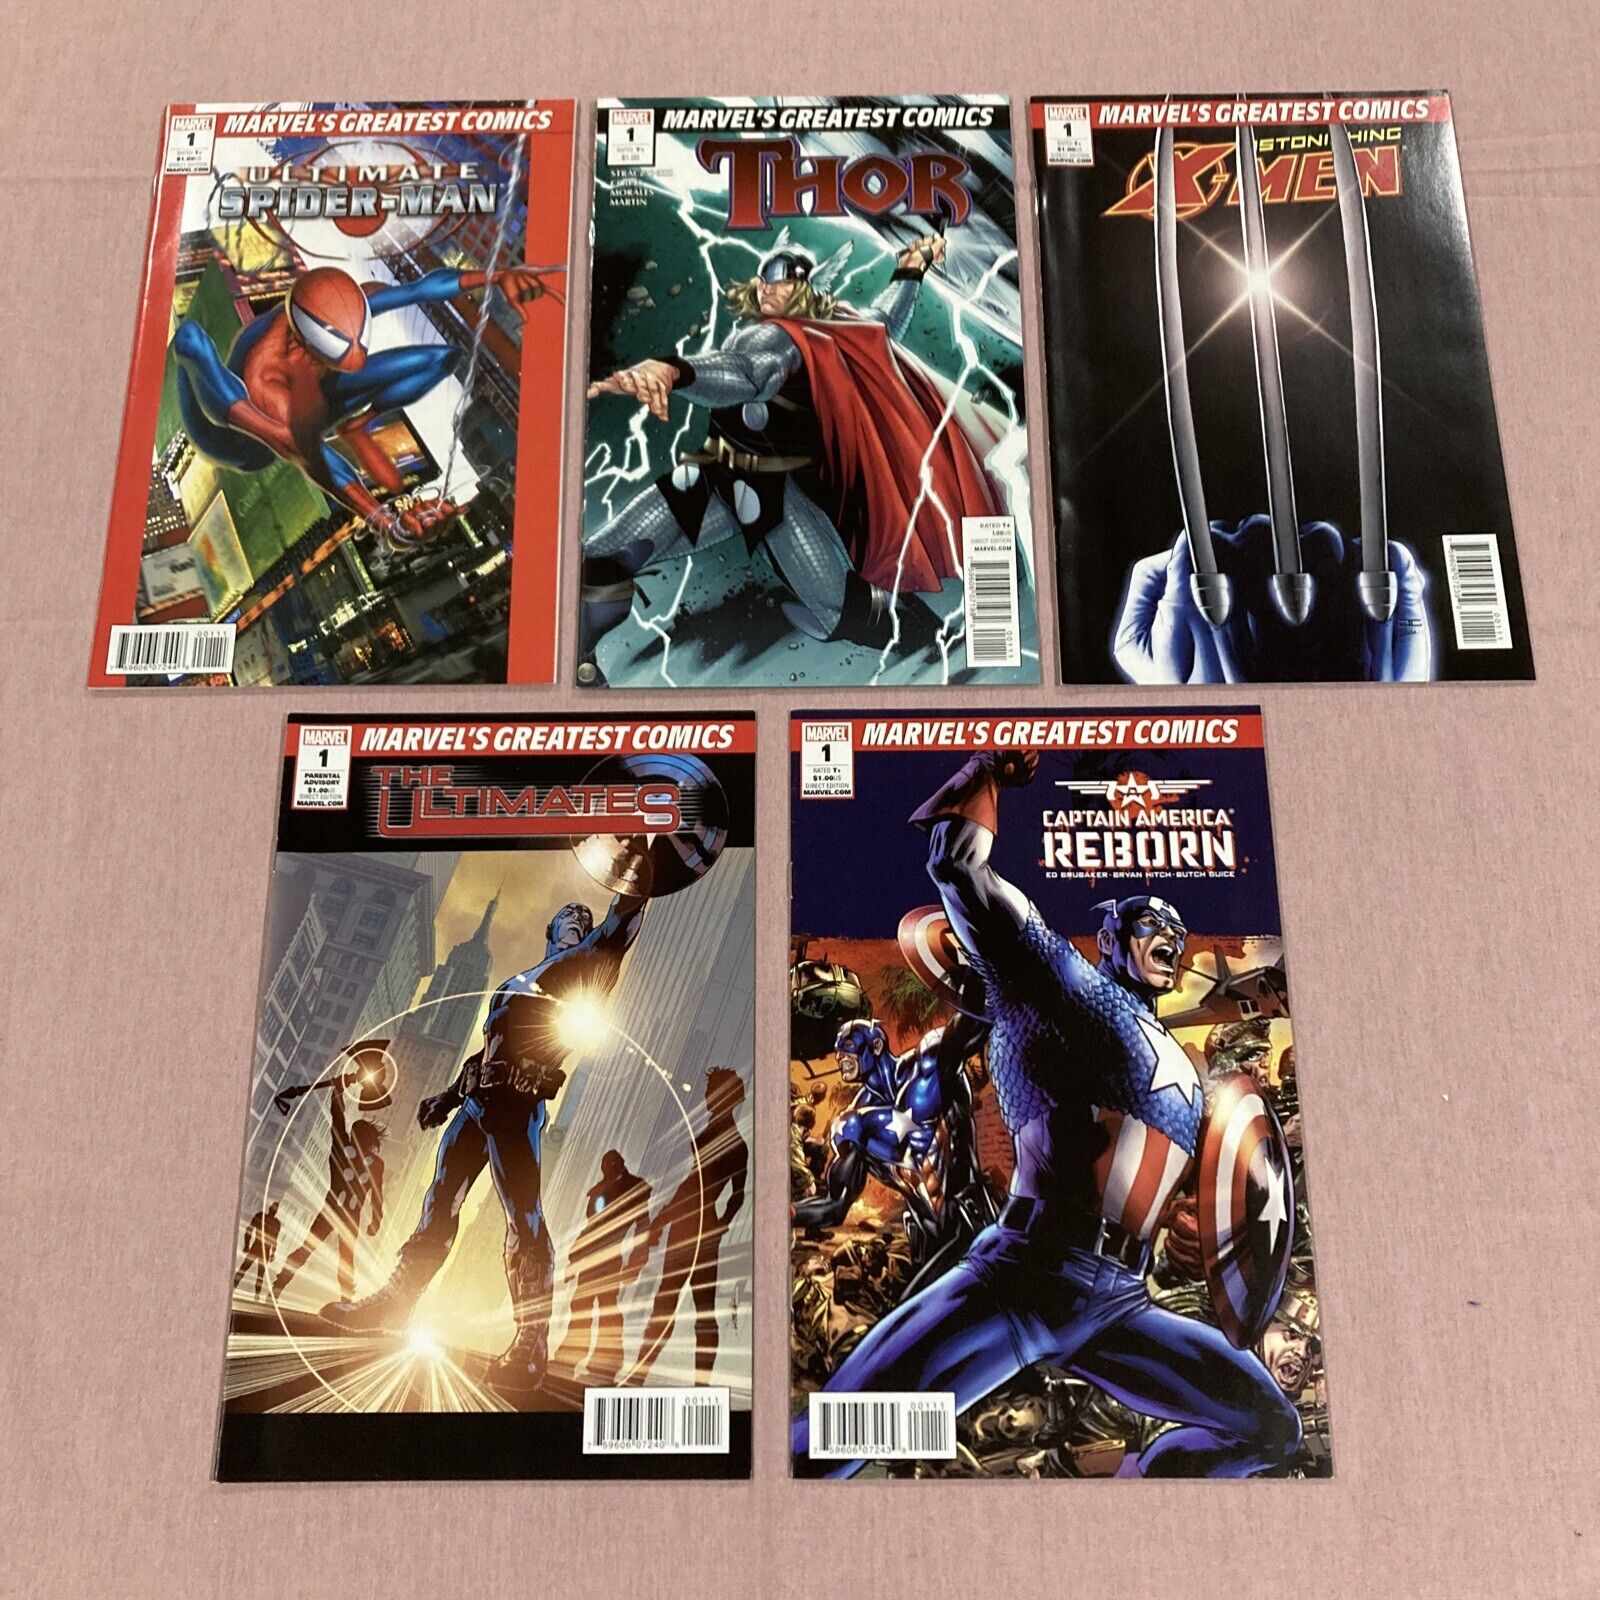 X-Men #1, Thor #1, Ultimates #1, Ultimate Spider-Man #1, Captain America Reborn1